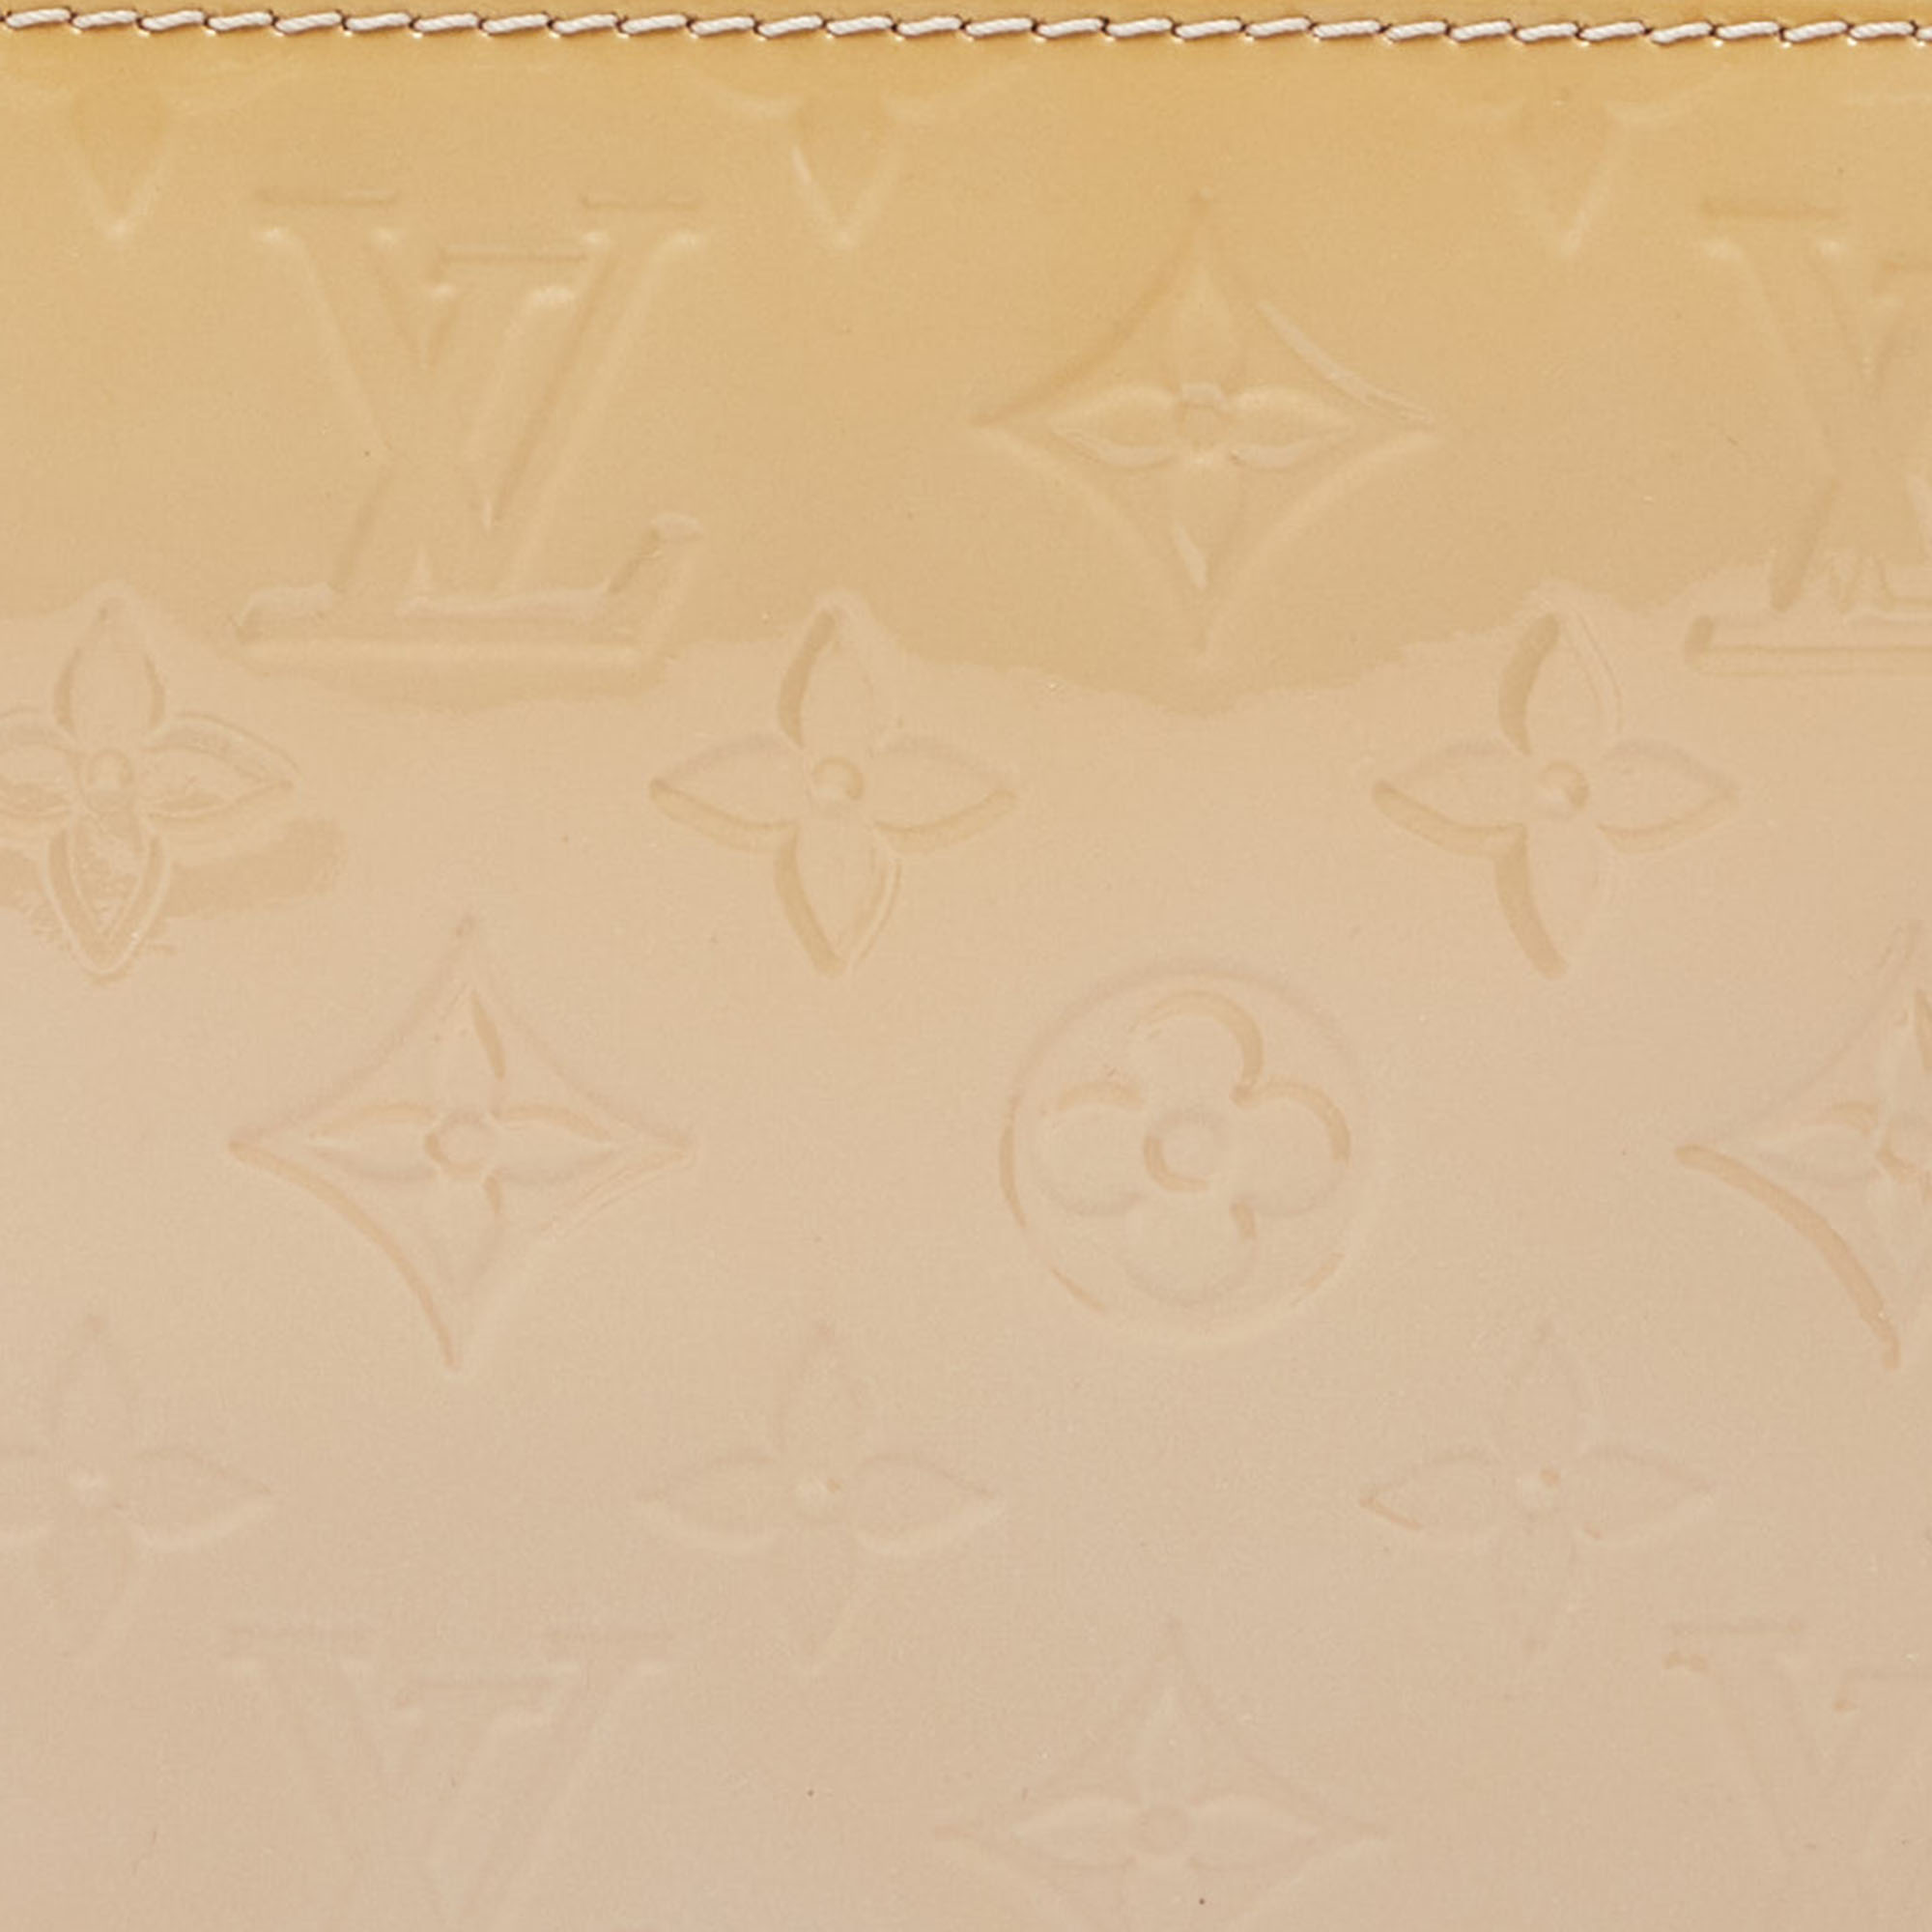 Louis Vuitton Rose Angelique Monogram Vernis Pochette Accessoires